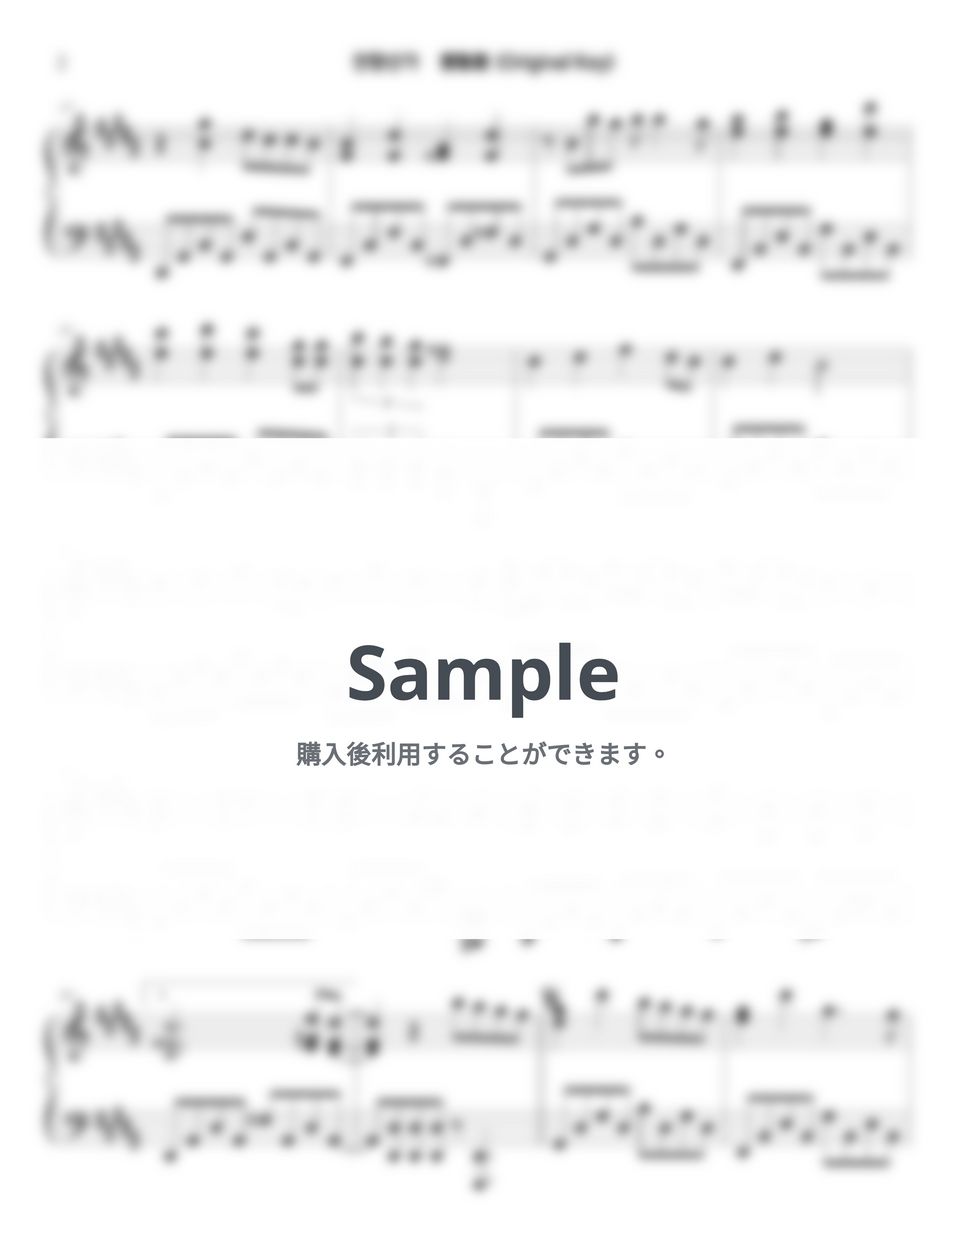 鬼滅の刃 - 残響散歌 (Original+Easier Key) by Sunny Fingers Piano